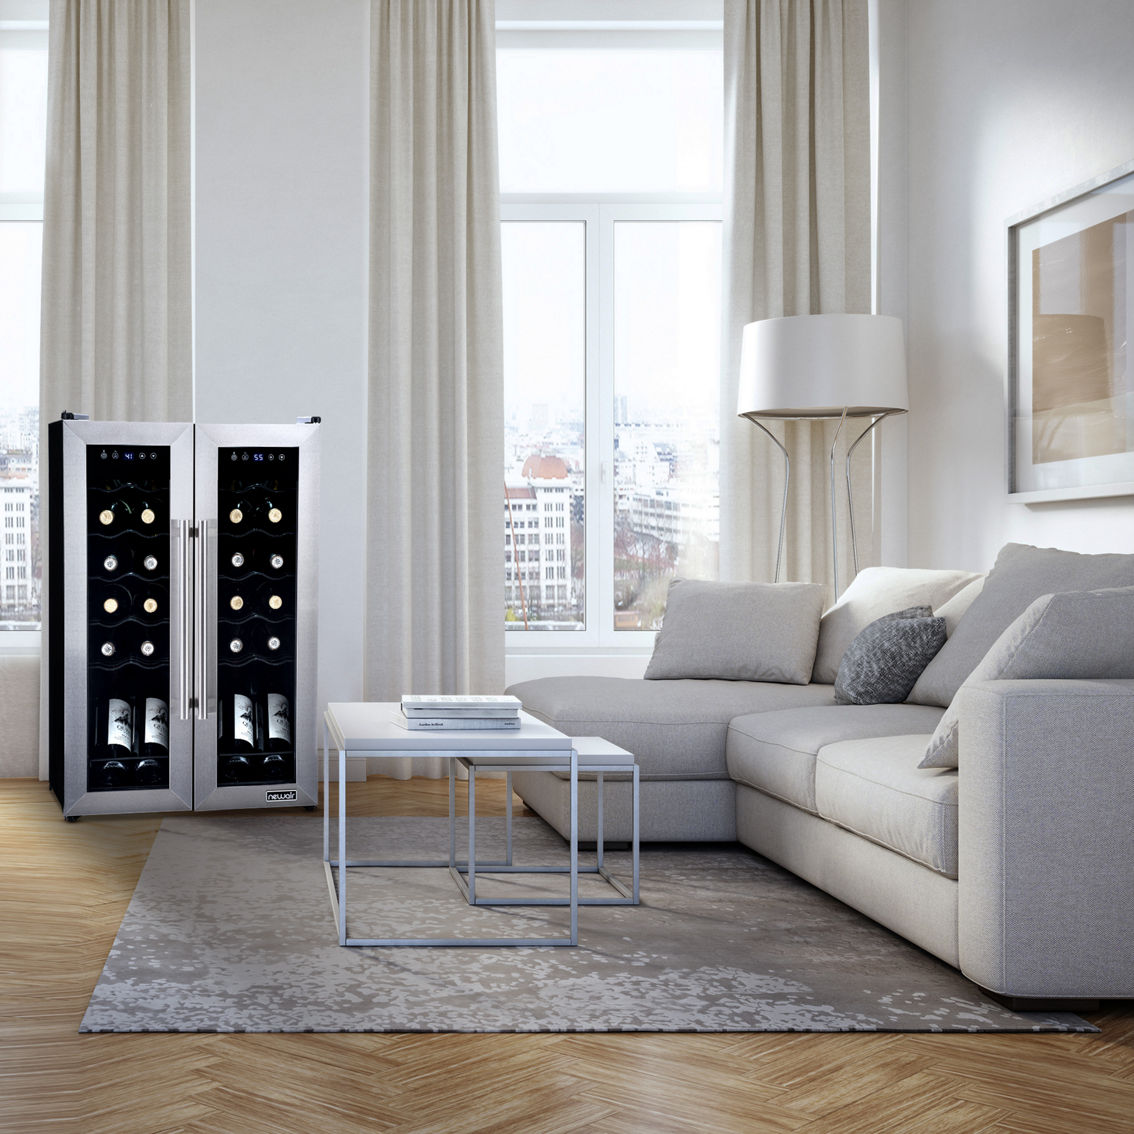 Newair French Door Freestanding 24 Bottle Wine Cooler Refrigerator - Image 6 of 8